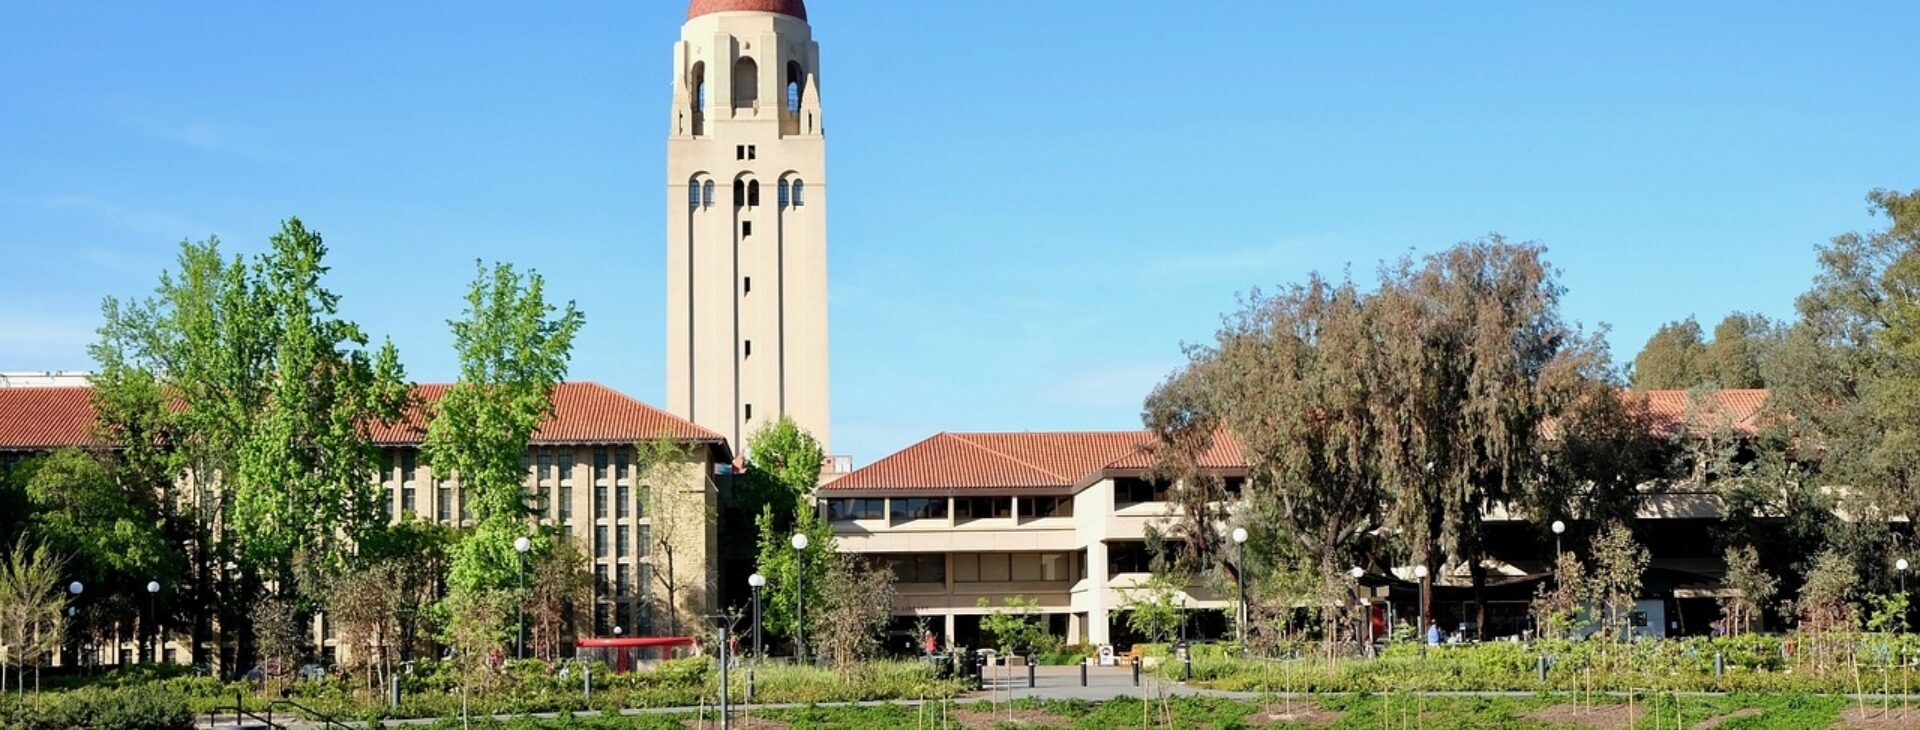 Stanford University in California